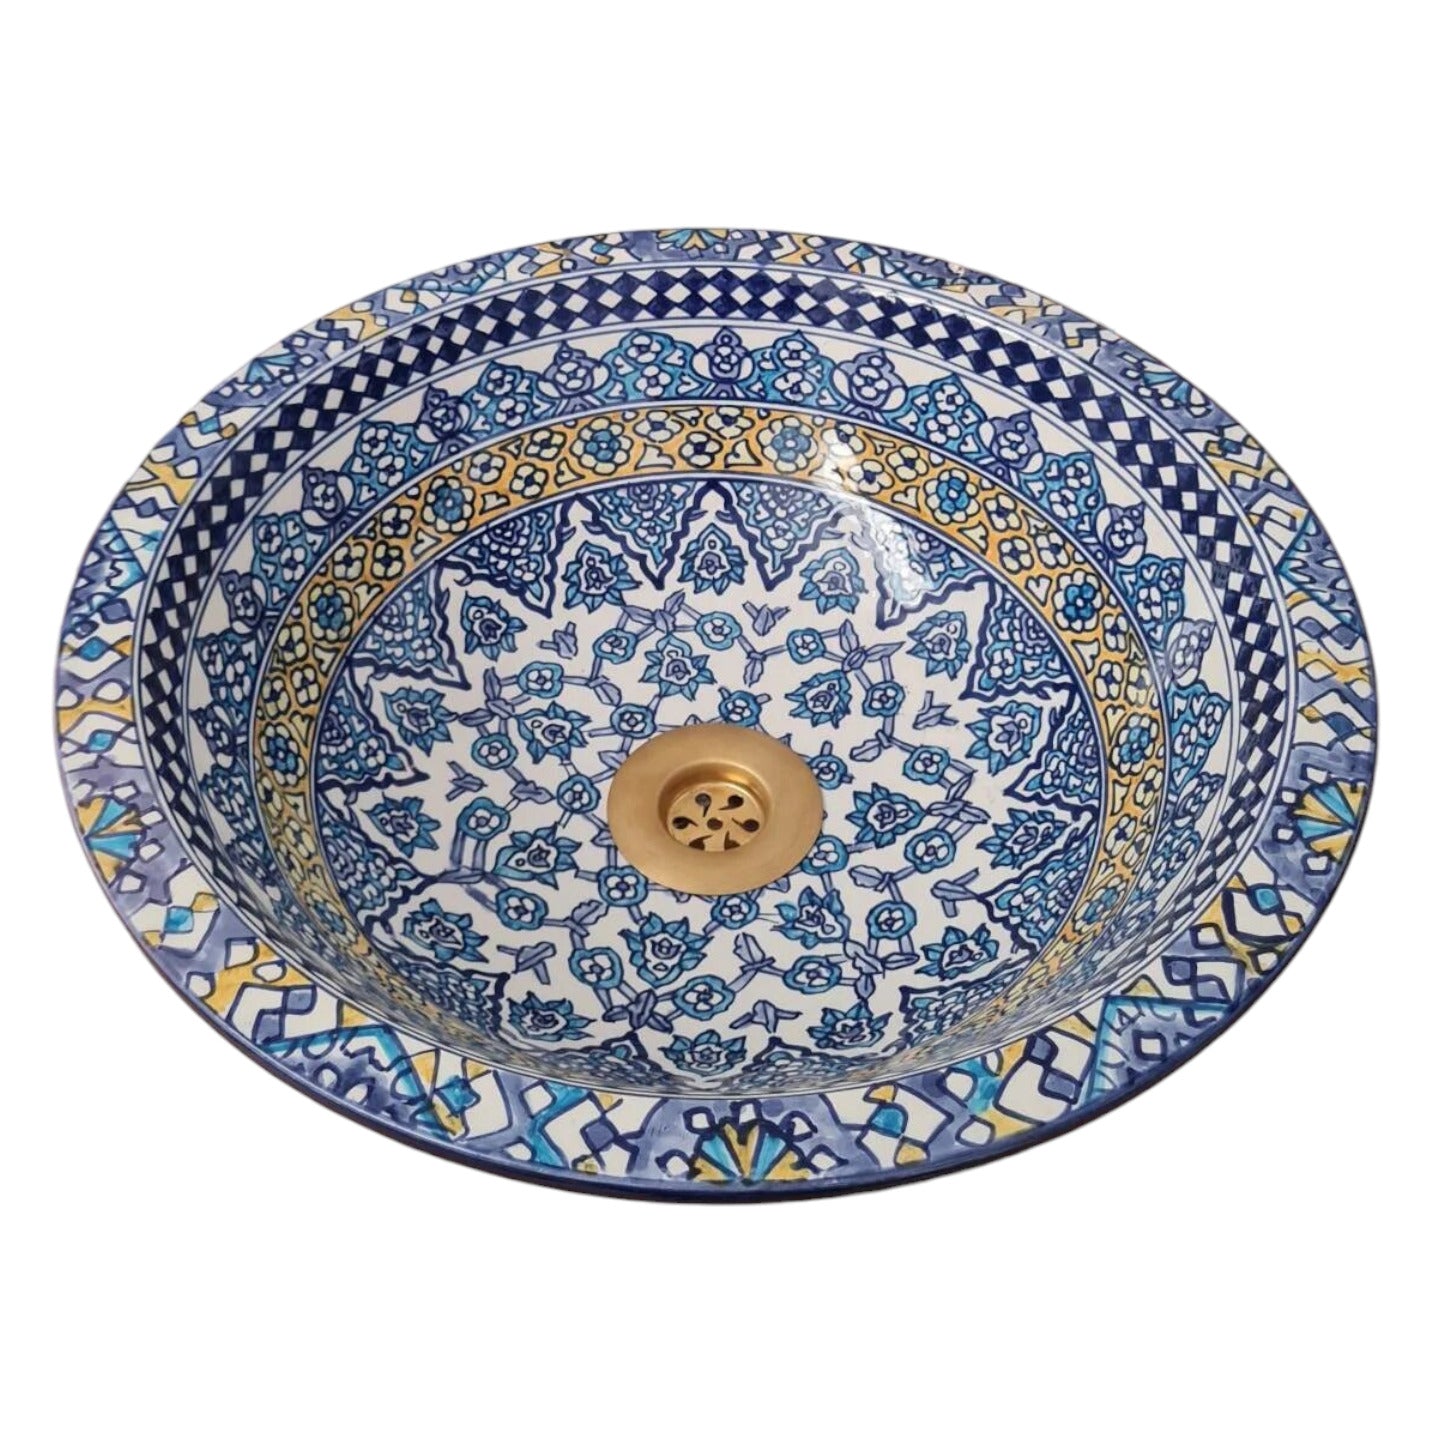 Moroccan sink | moroccan ceramic sink | bathroom sink | moroccan bathroom basin | cloakroom basin | Bleu sink #123